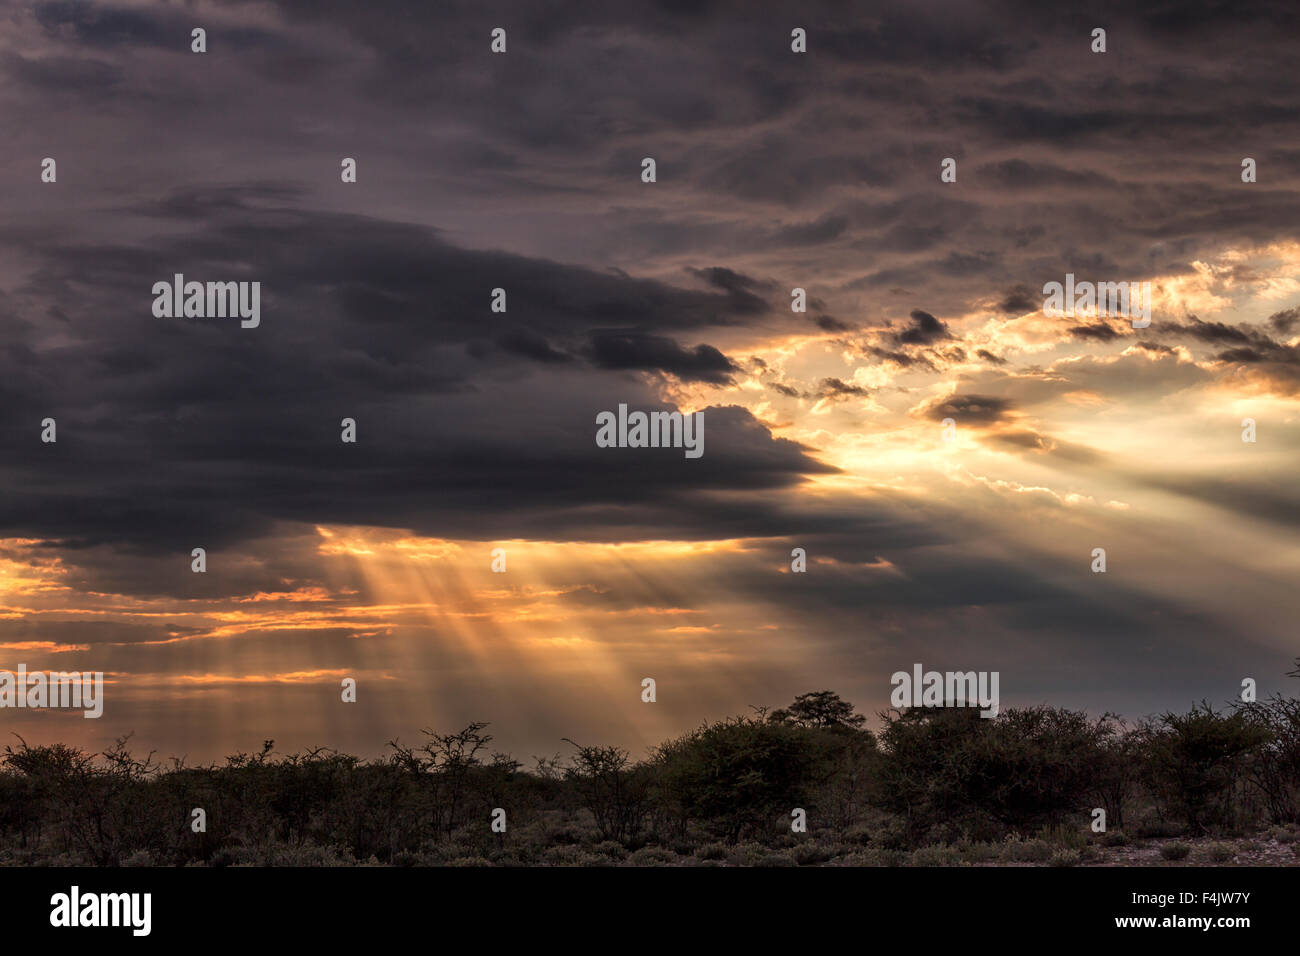 Sonnenuntergang mit Gott Strahlen, Etosha Nationalpark, Namibia, Afrika Stockfoto